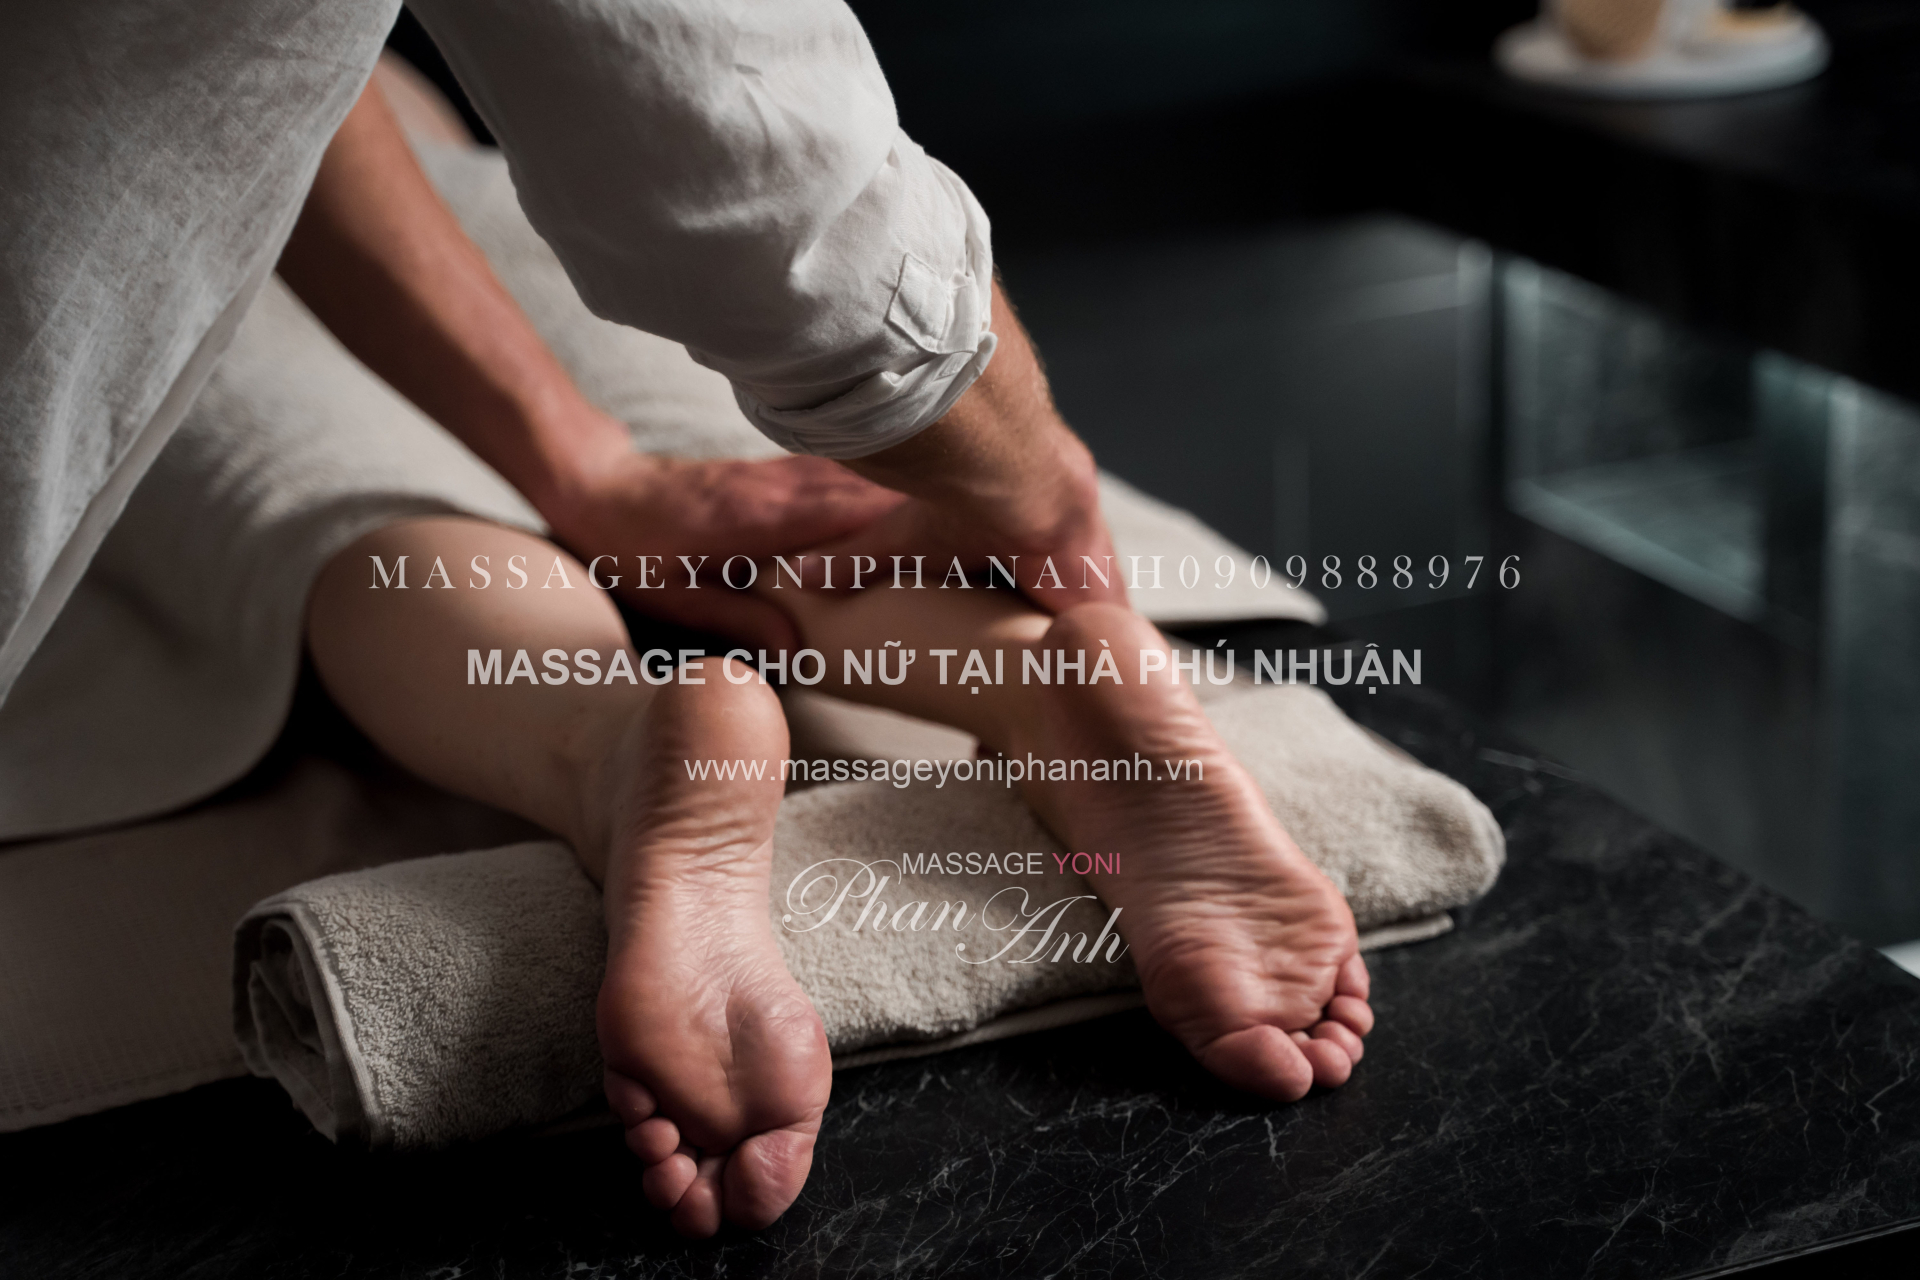 massage cho nữ tại nhà Phú Nhuận